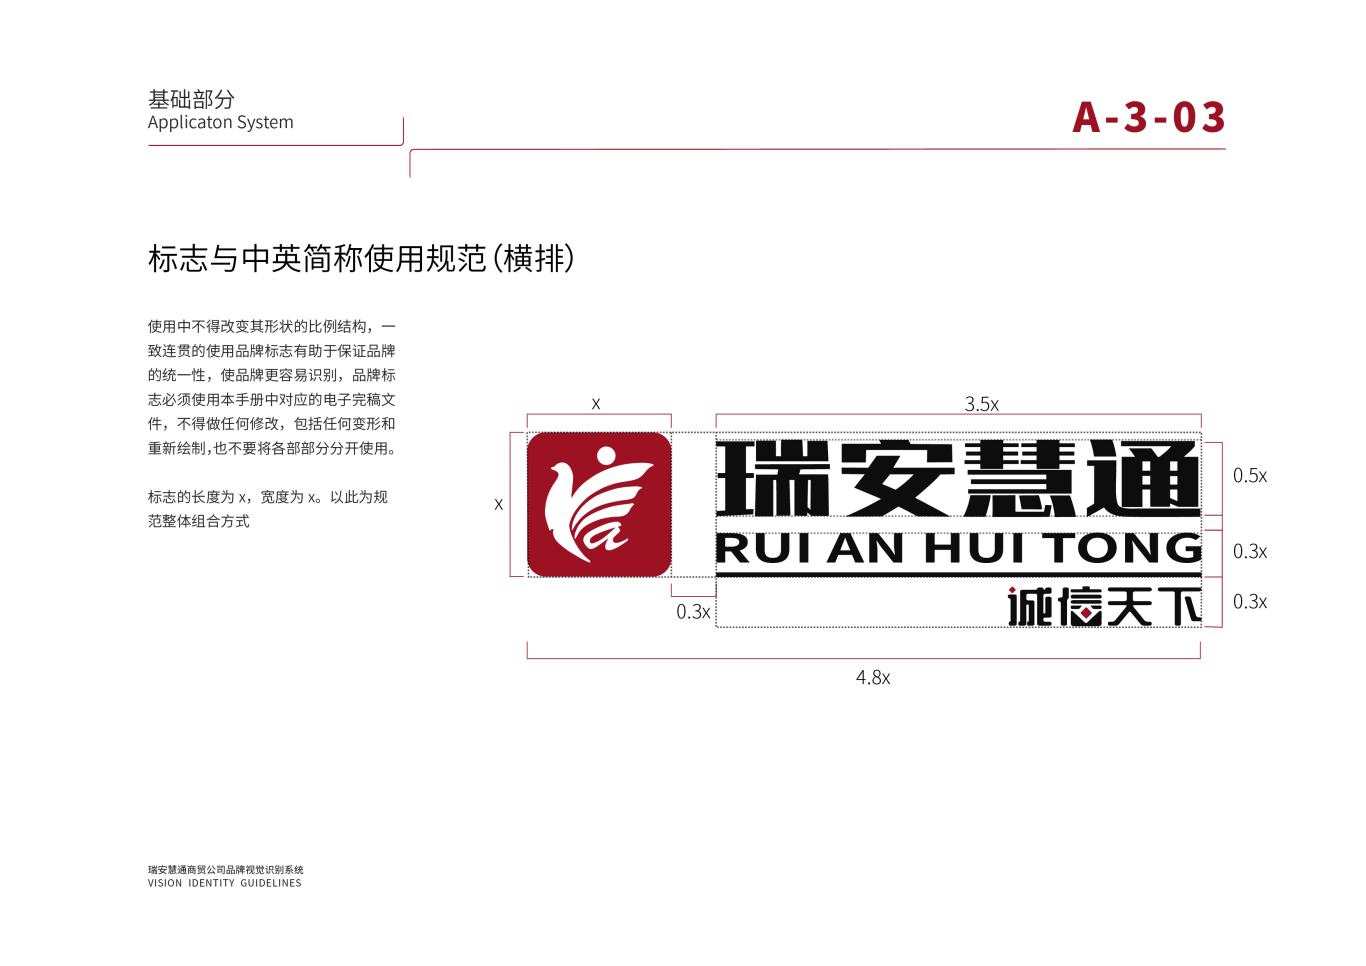 北京瑞安慧通商贸公司logo及vi基础设计图9